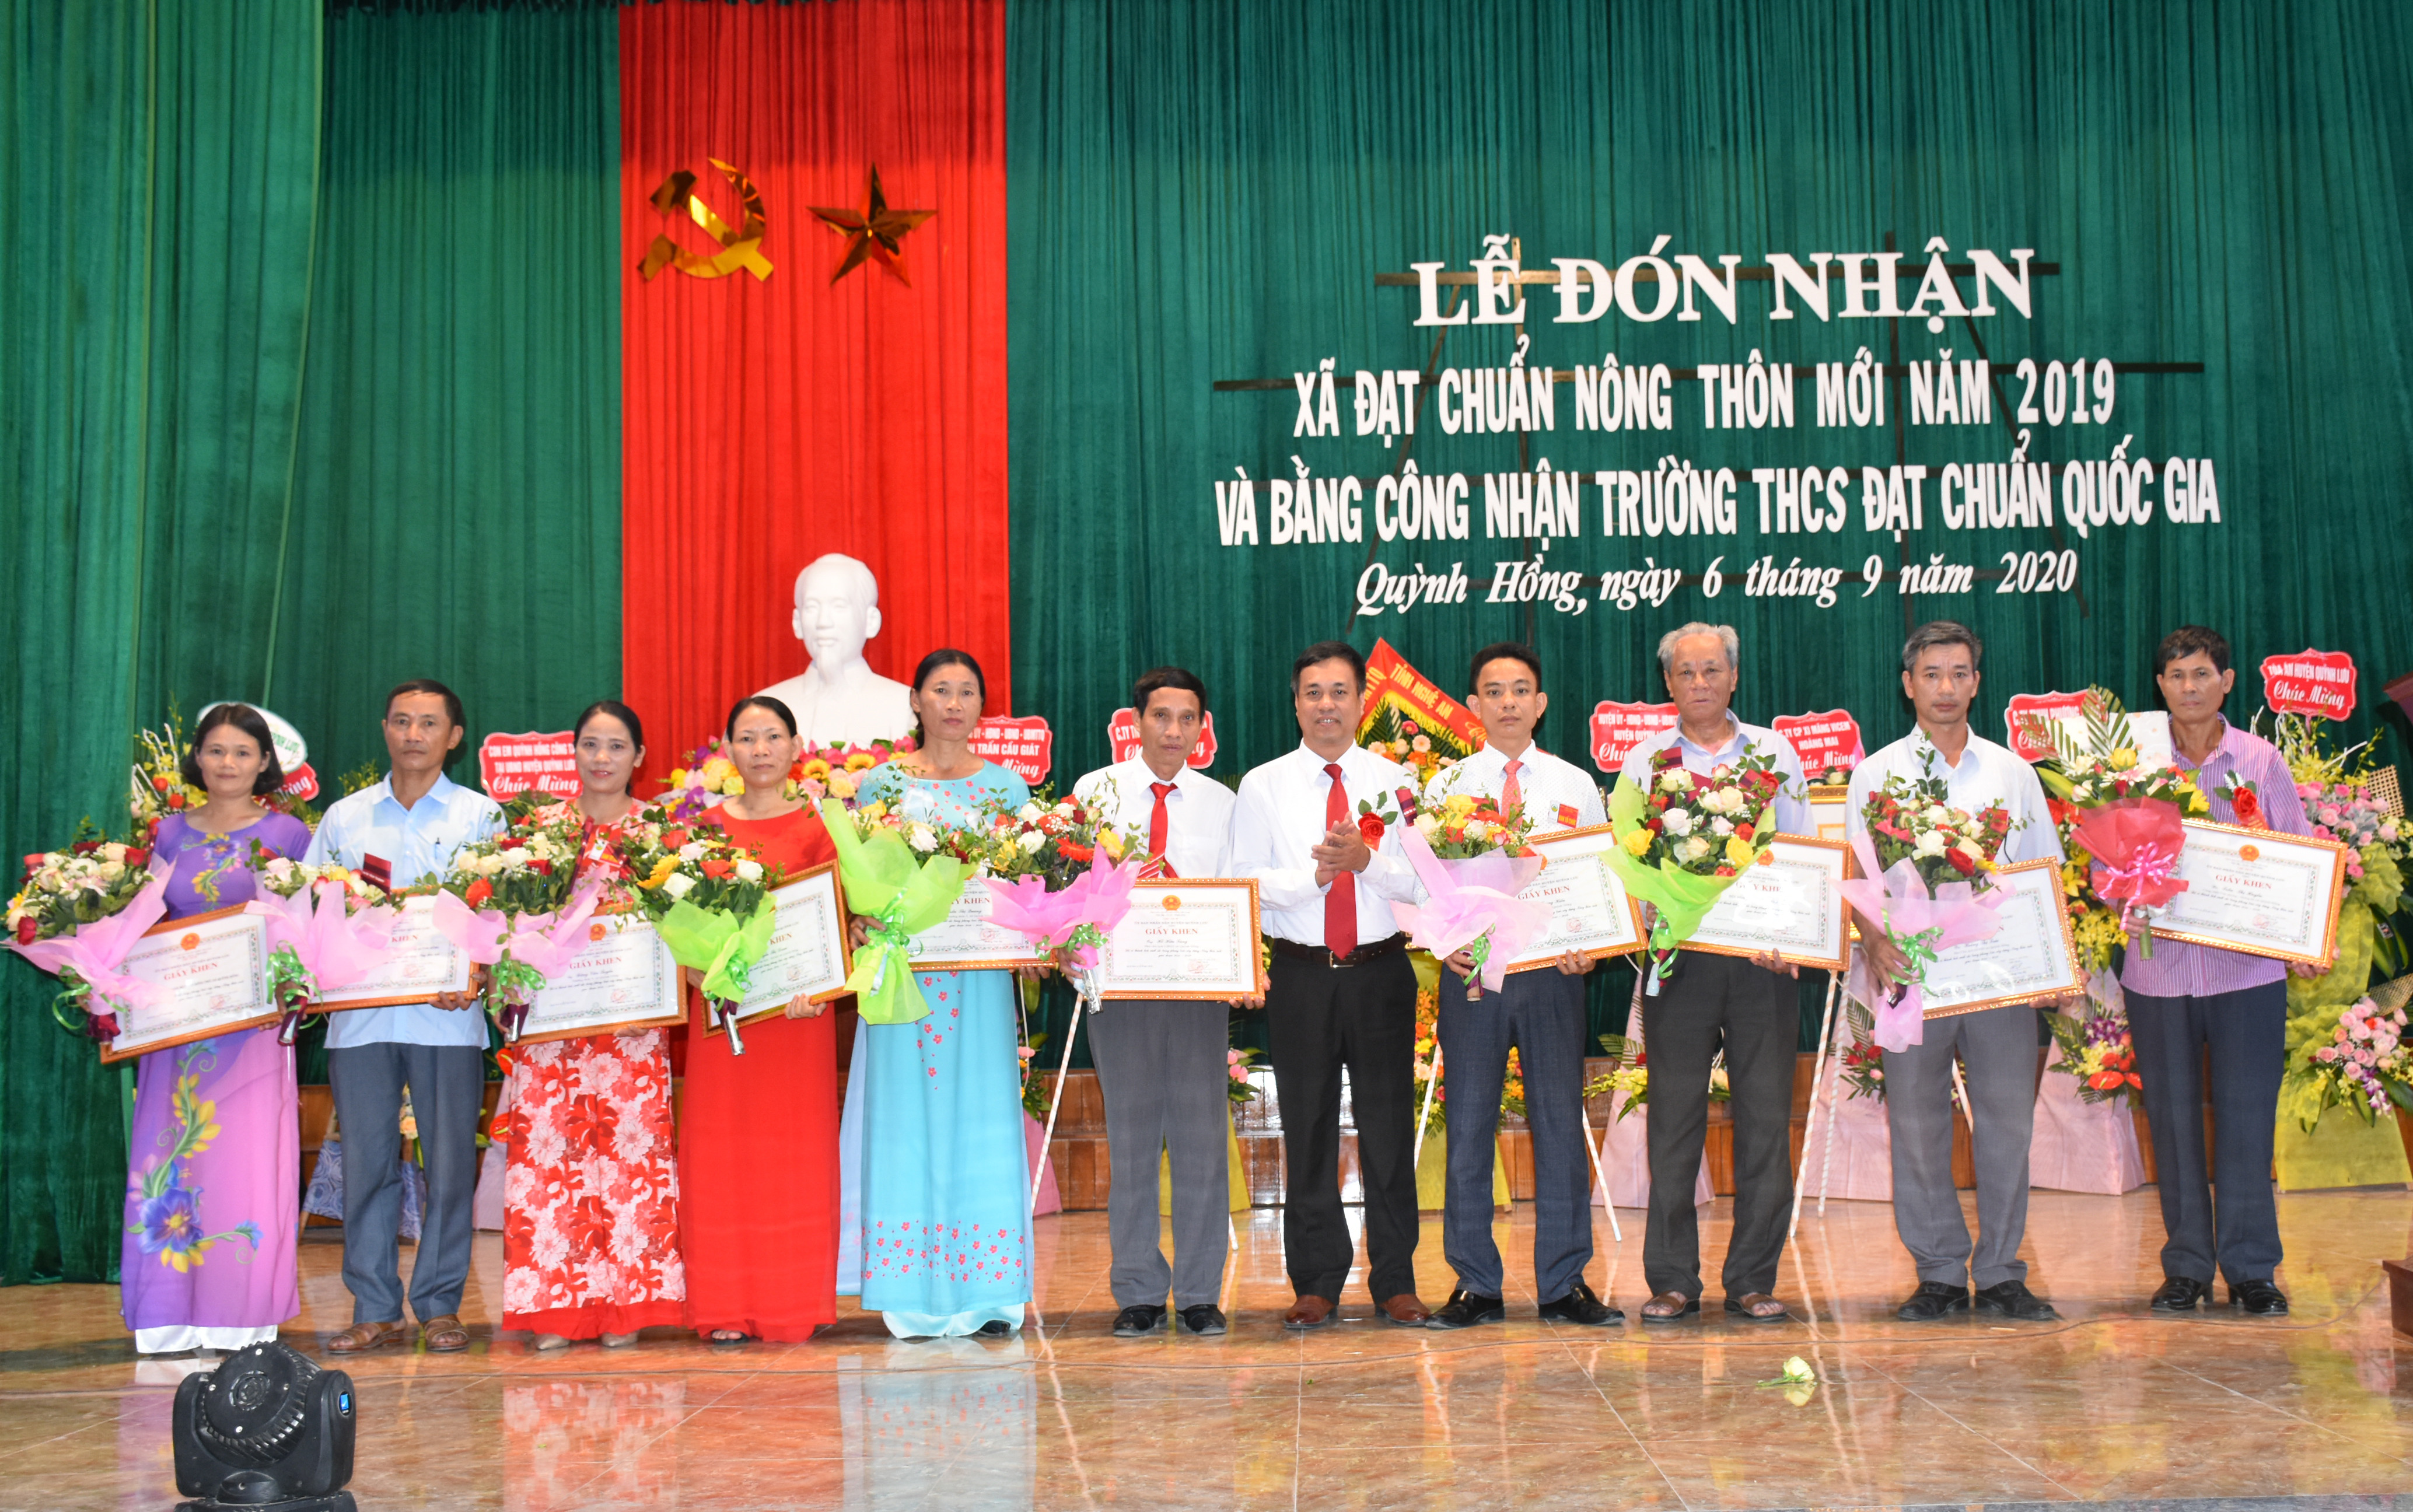 Lãnh đạo huyện Quỳnh Lưu trao giấy khen cho các tập thể, cá nhân có nhiều đóng góp trong xây dựng nông thôn mới và trường đạt chuẩn Quốc gia. Ảnh: Thu Hương